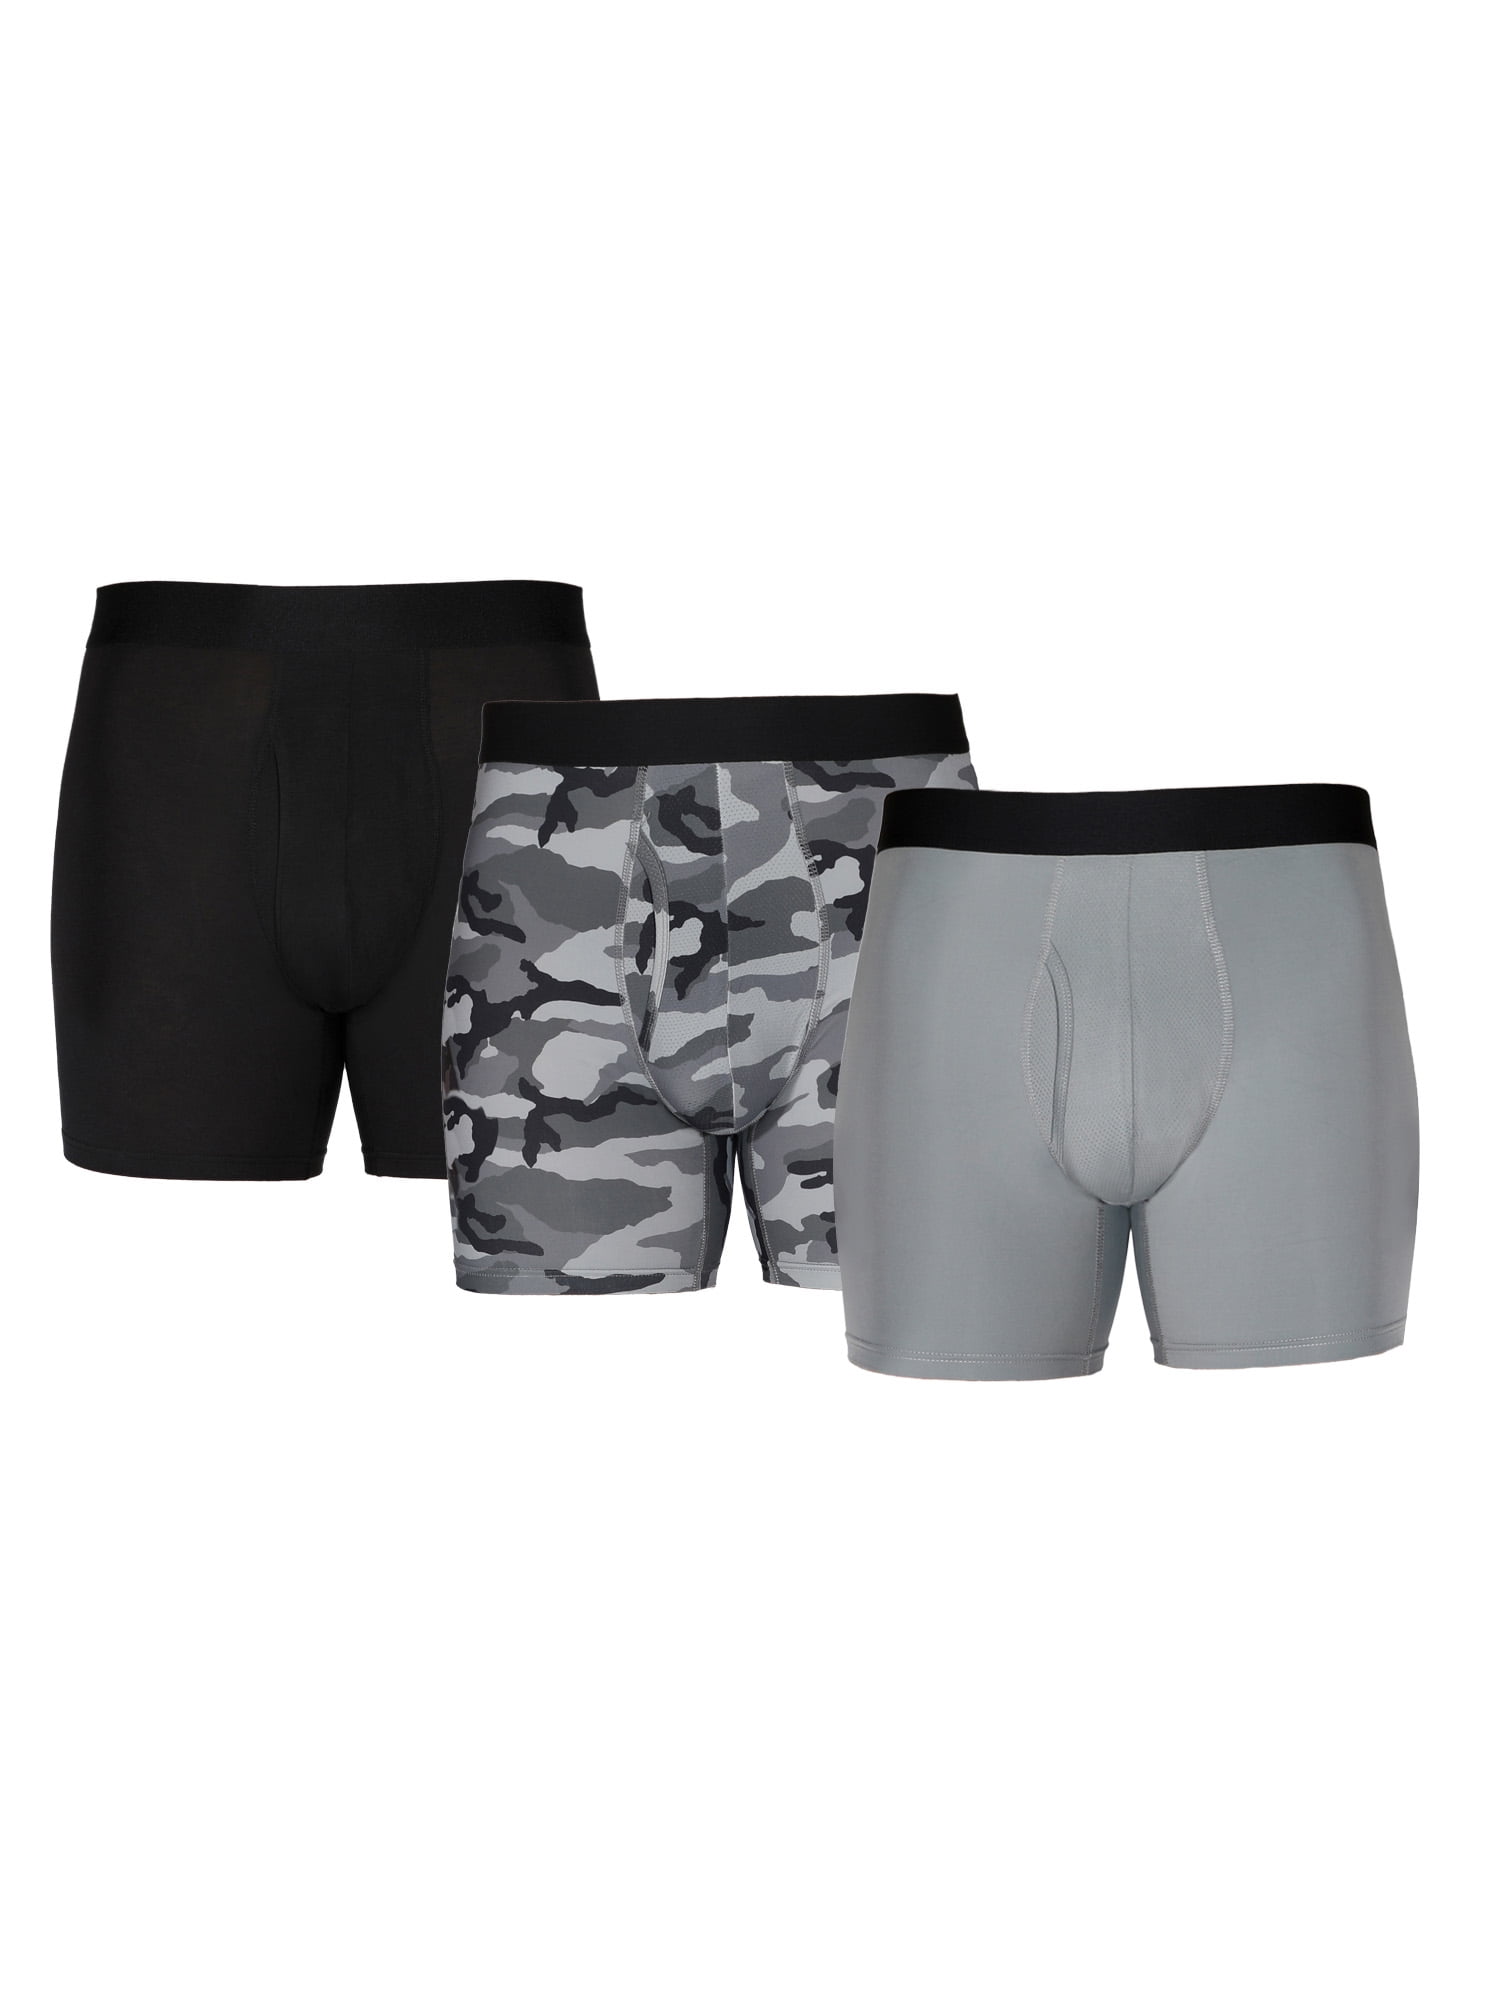 Athletic Works Men's Boxer Briefs Underwear, 3 Pack